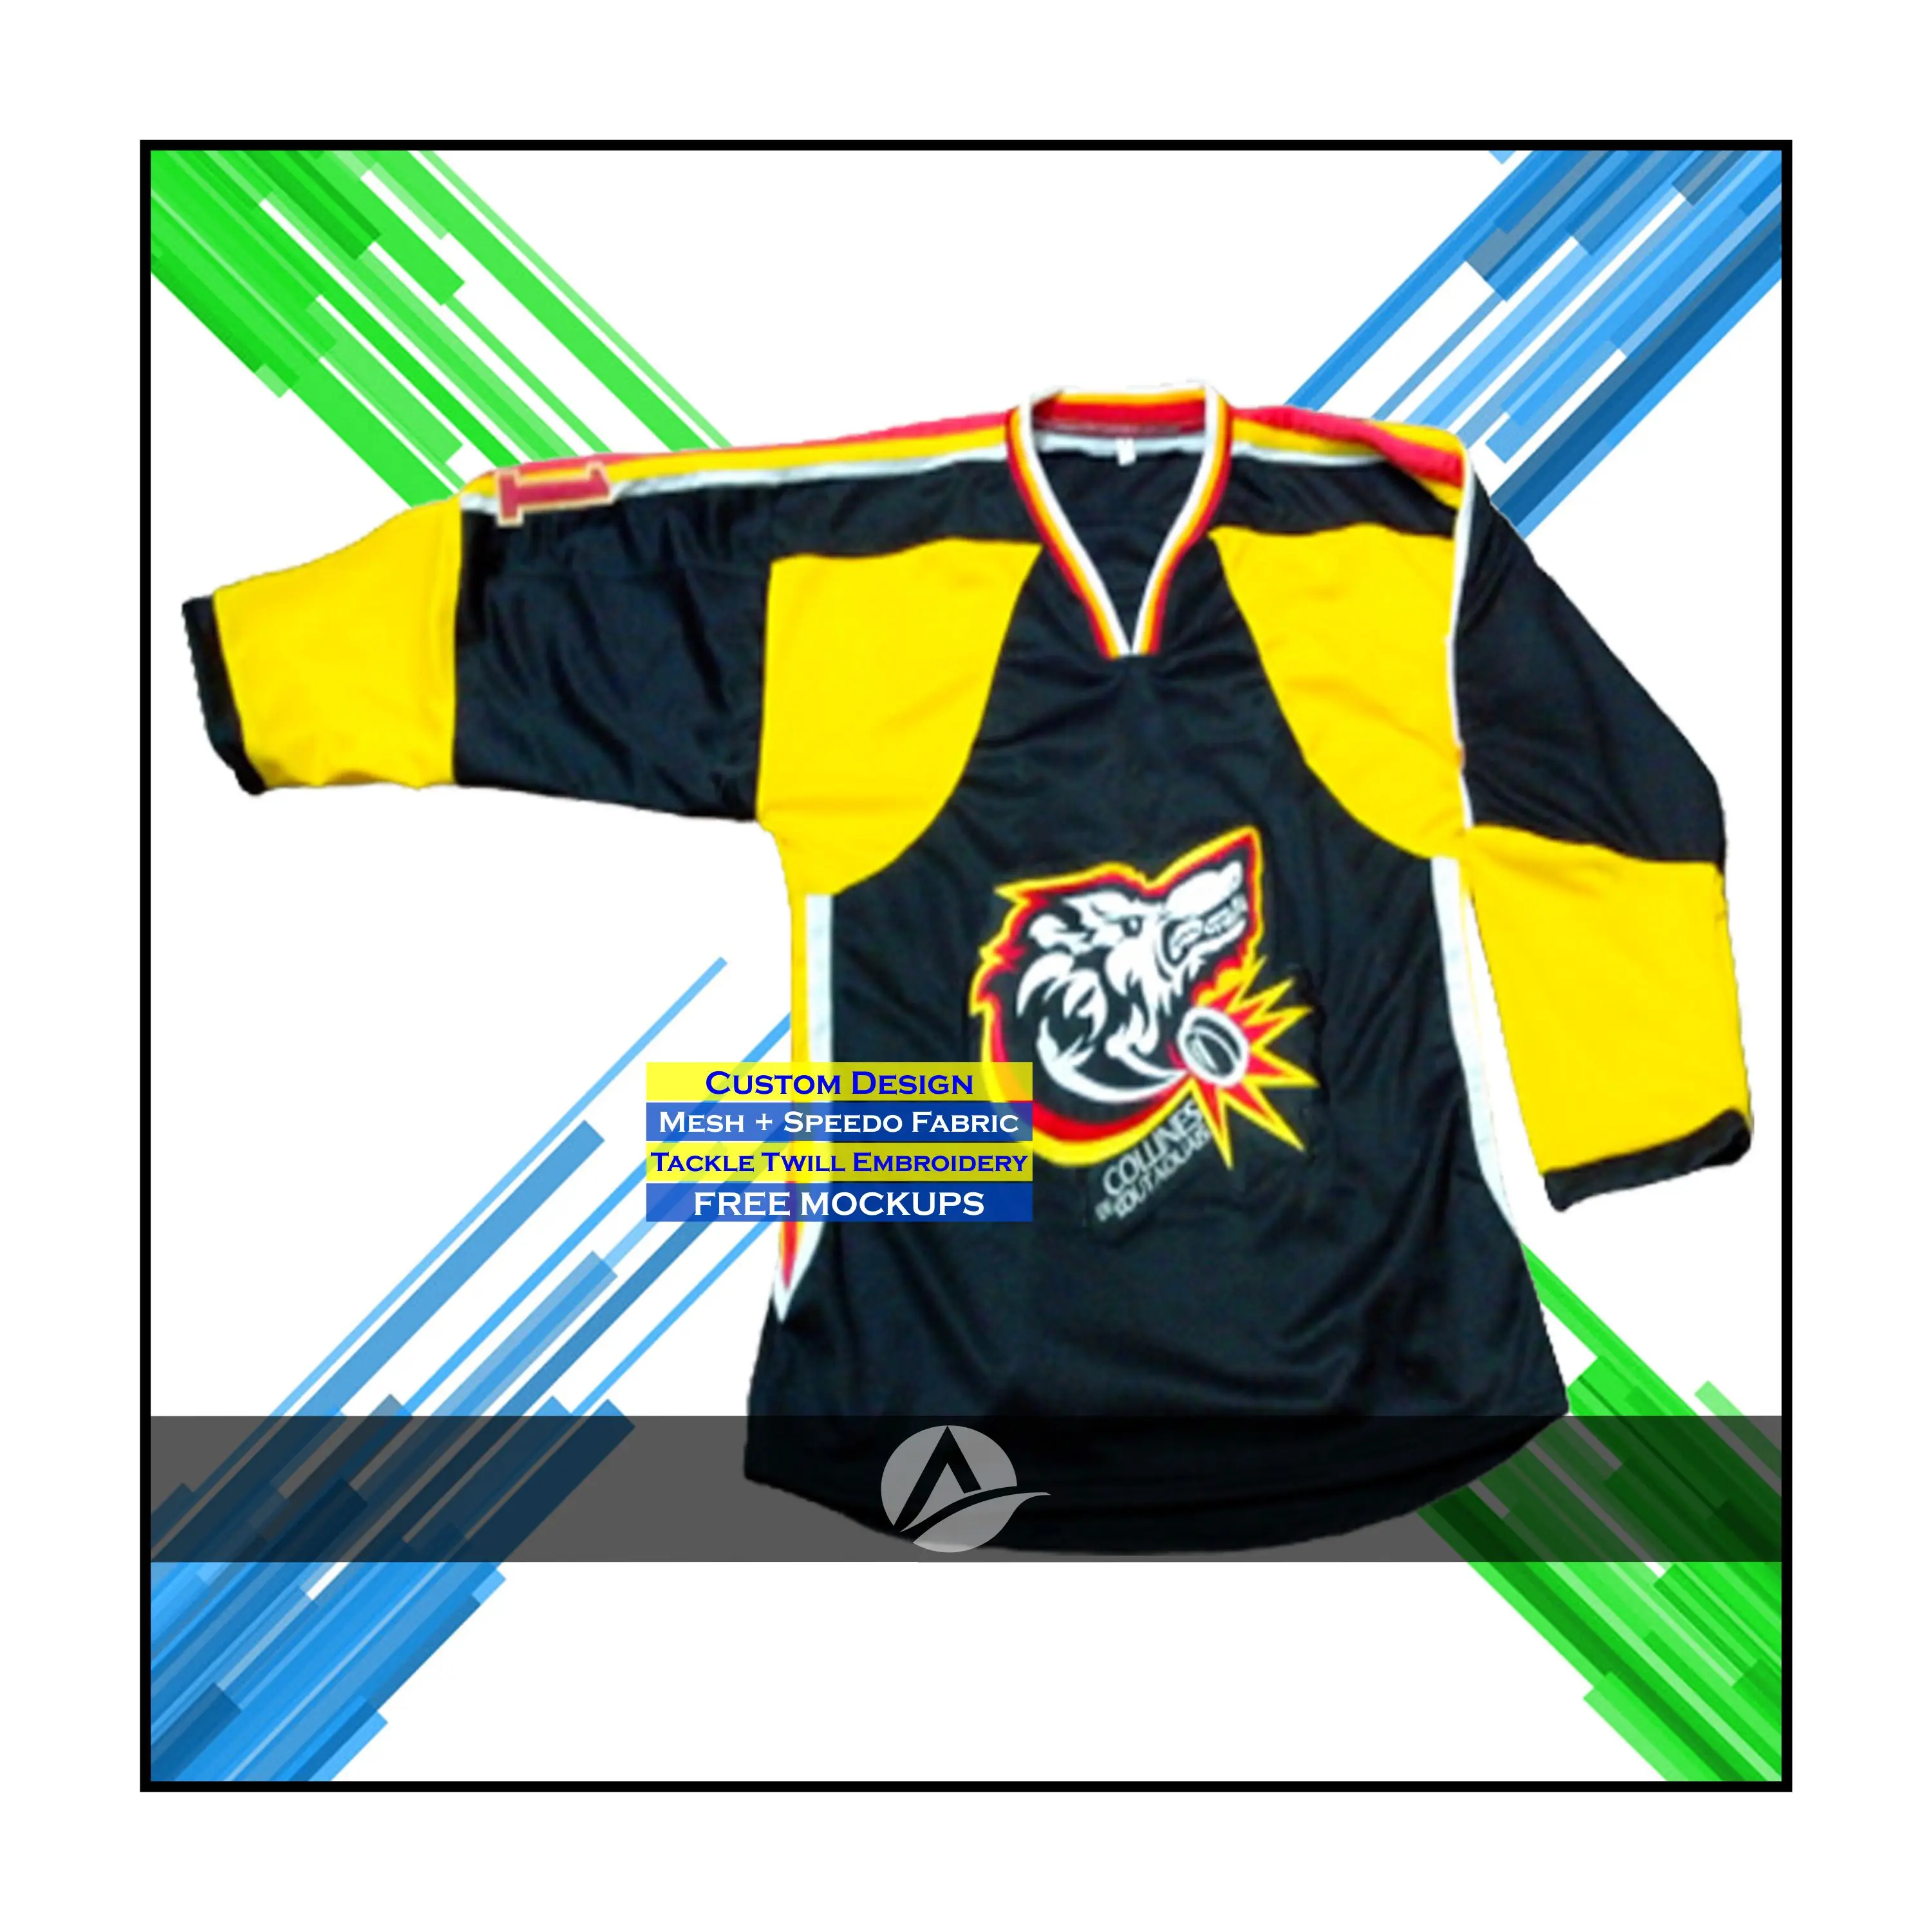 Custom Sublimated Hockey Jerseys  Custom Hockey Jerseys Laces - 5